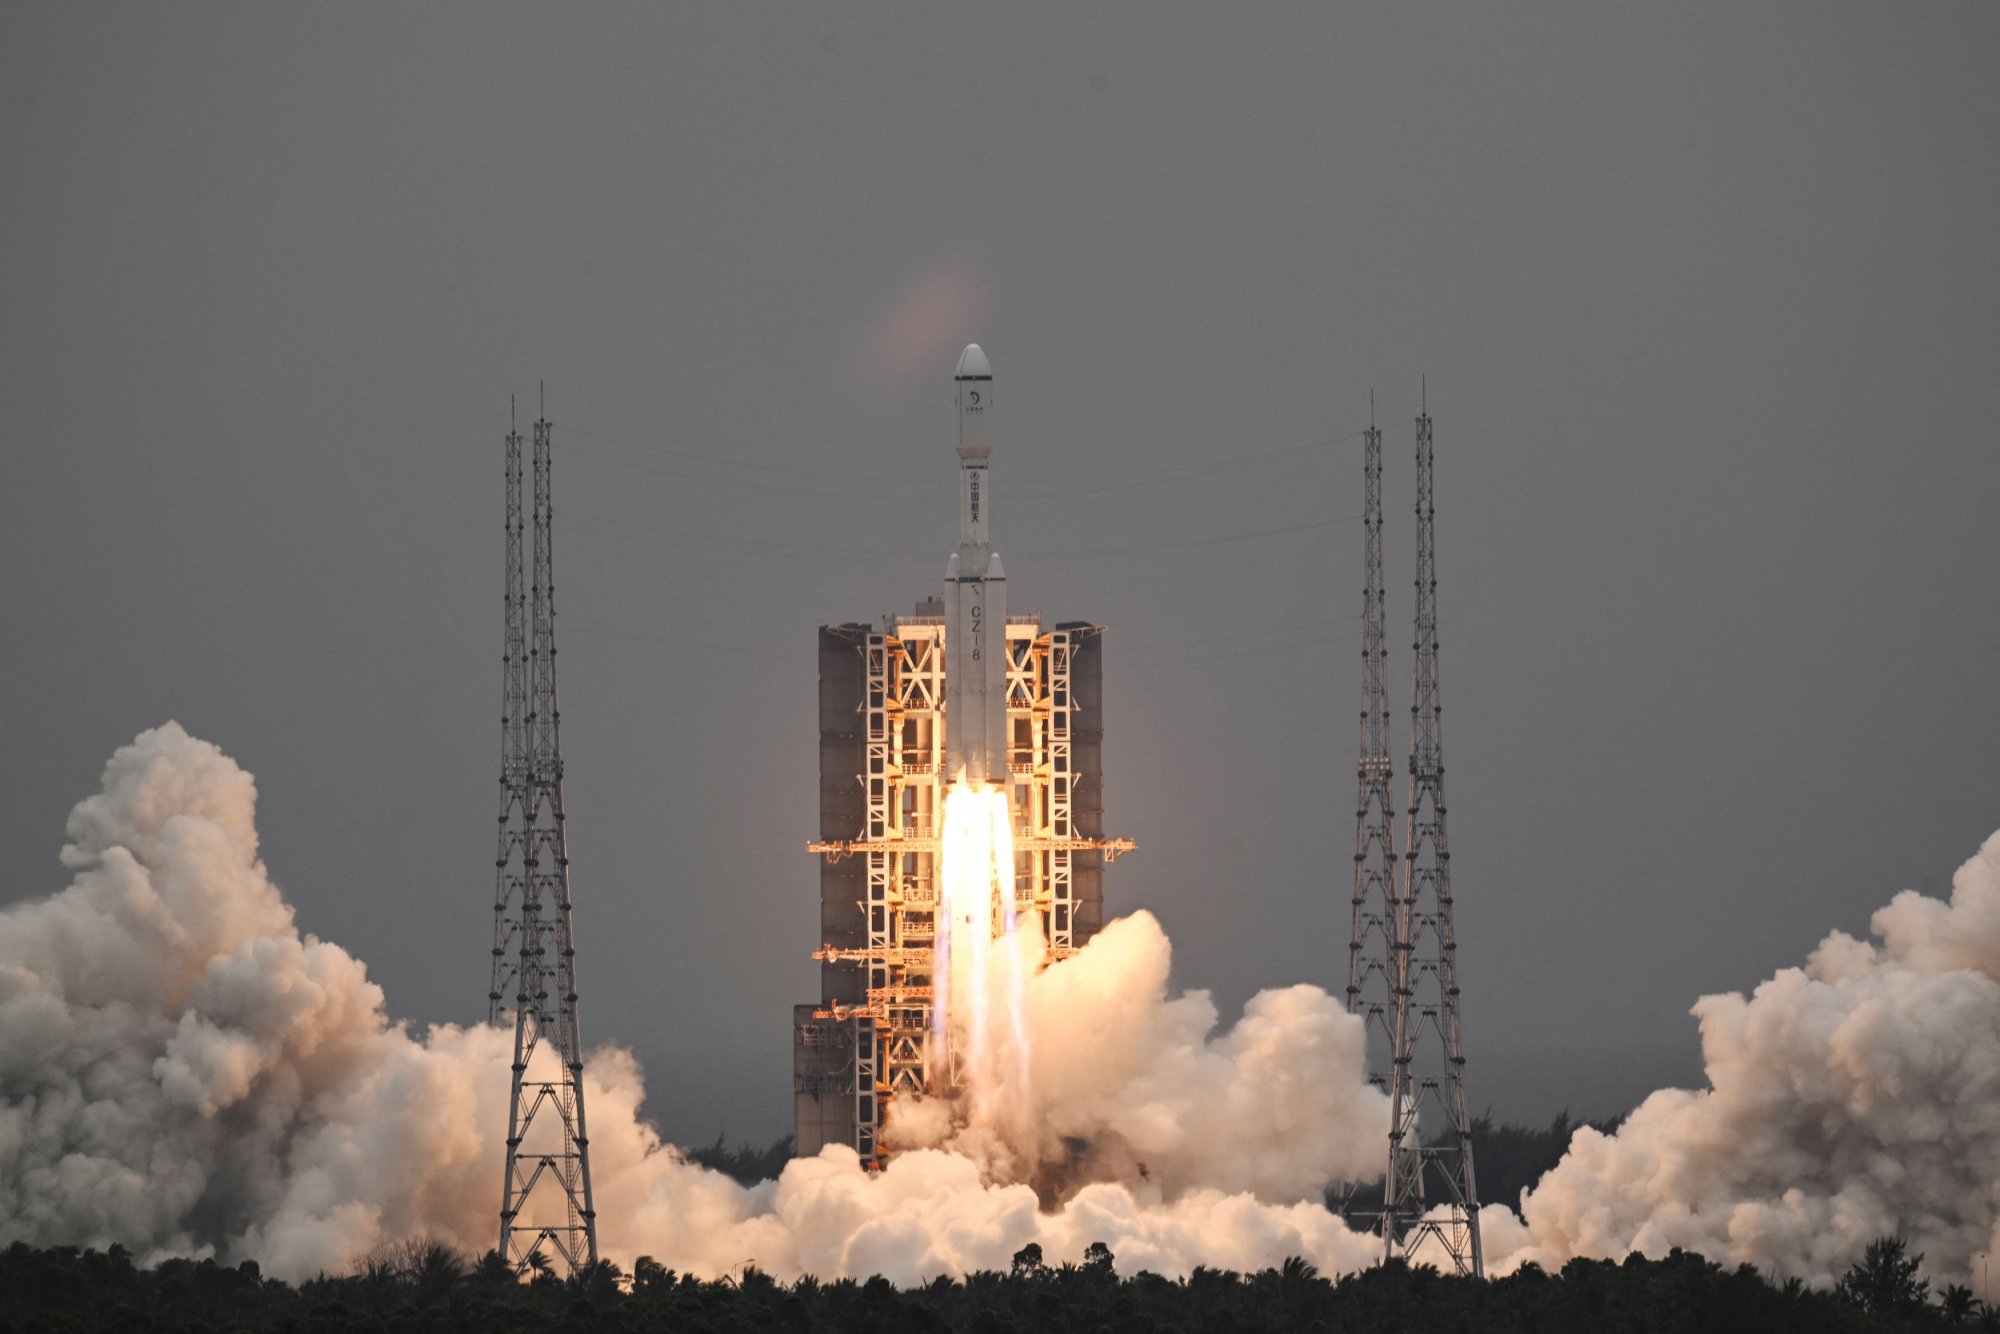 Σελήνη: Νέος κινεζικός δορυφόρος επιτρέπει επικοινωνία με την αθέατη πλευρά